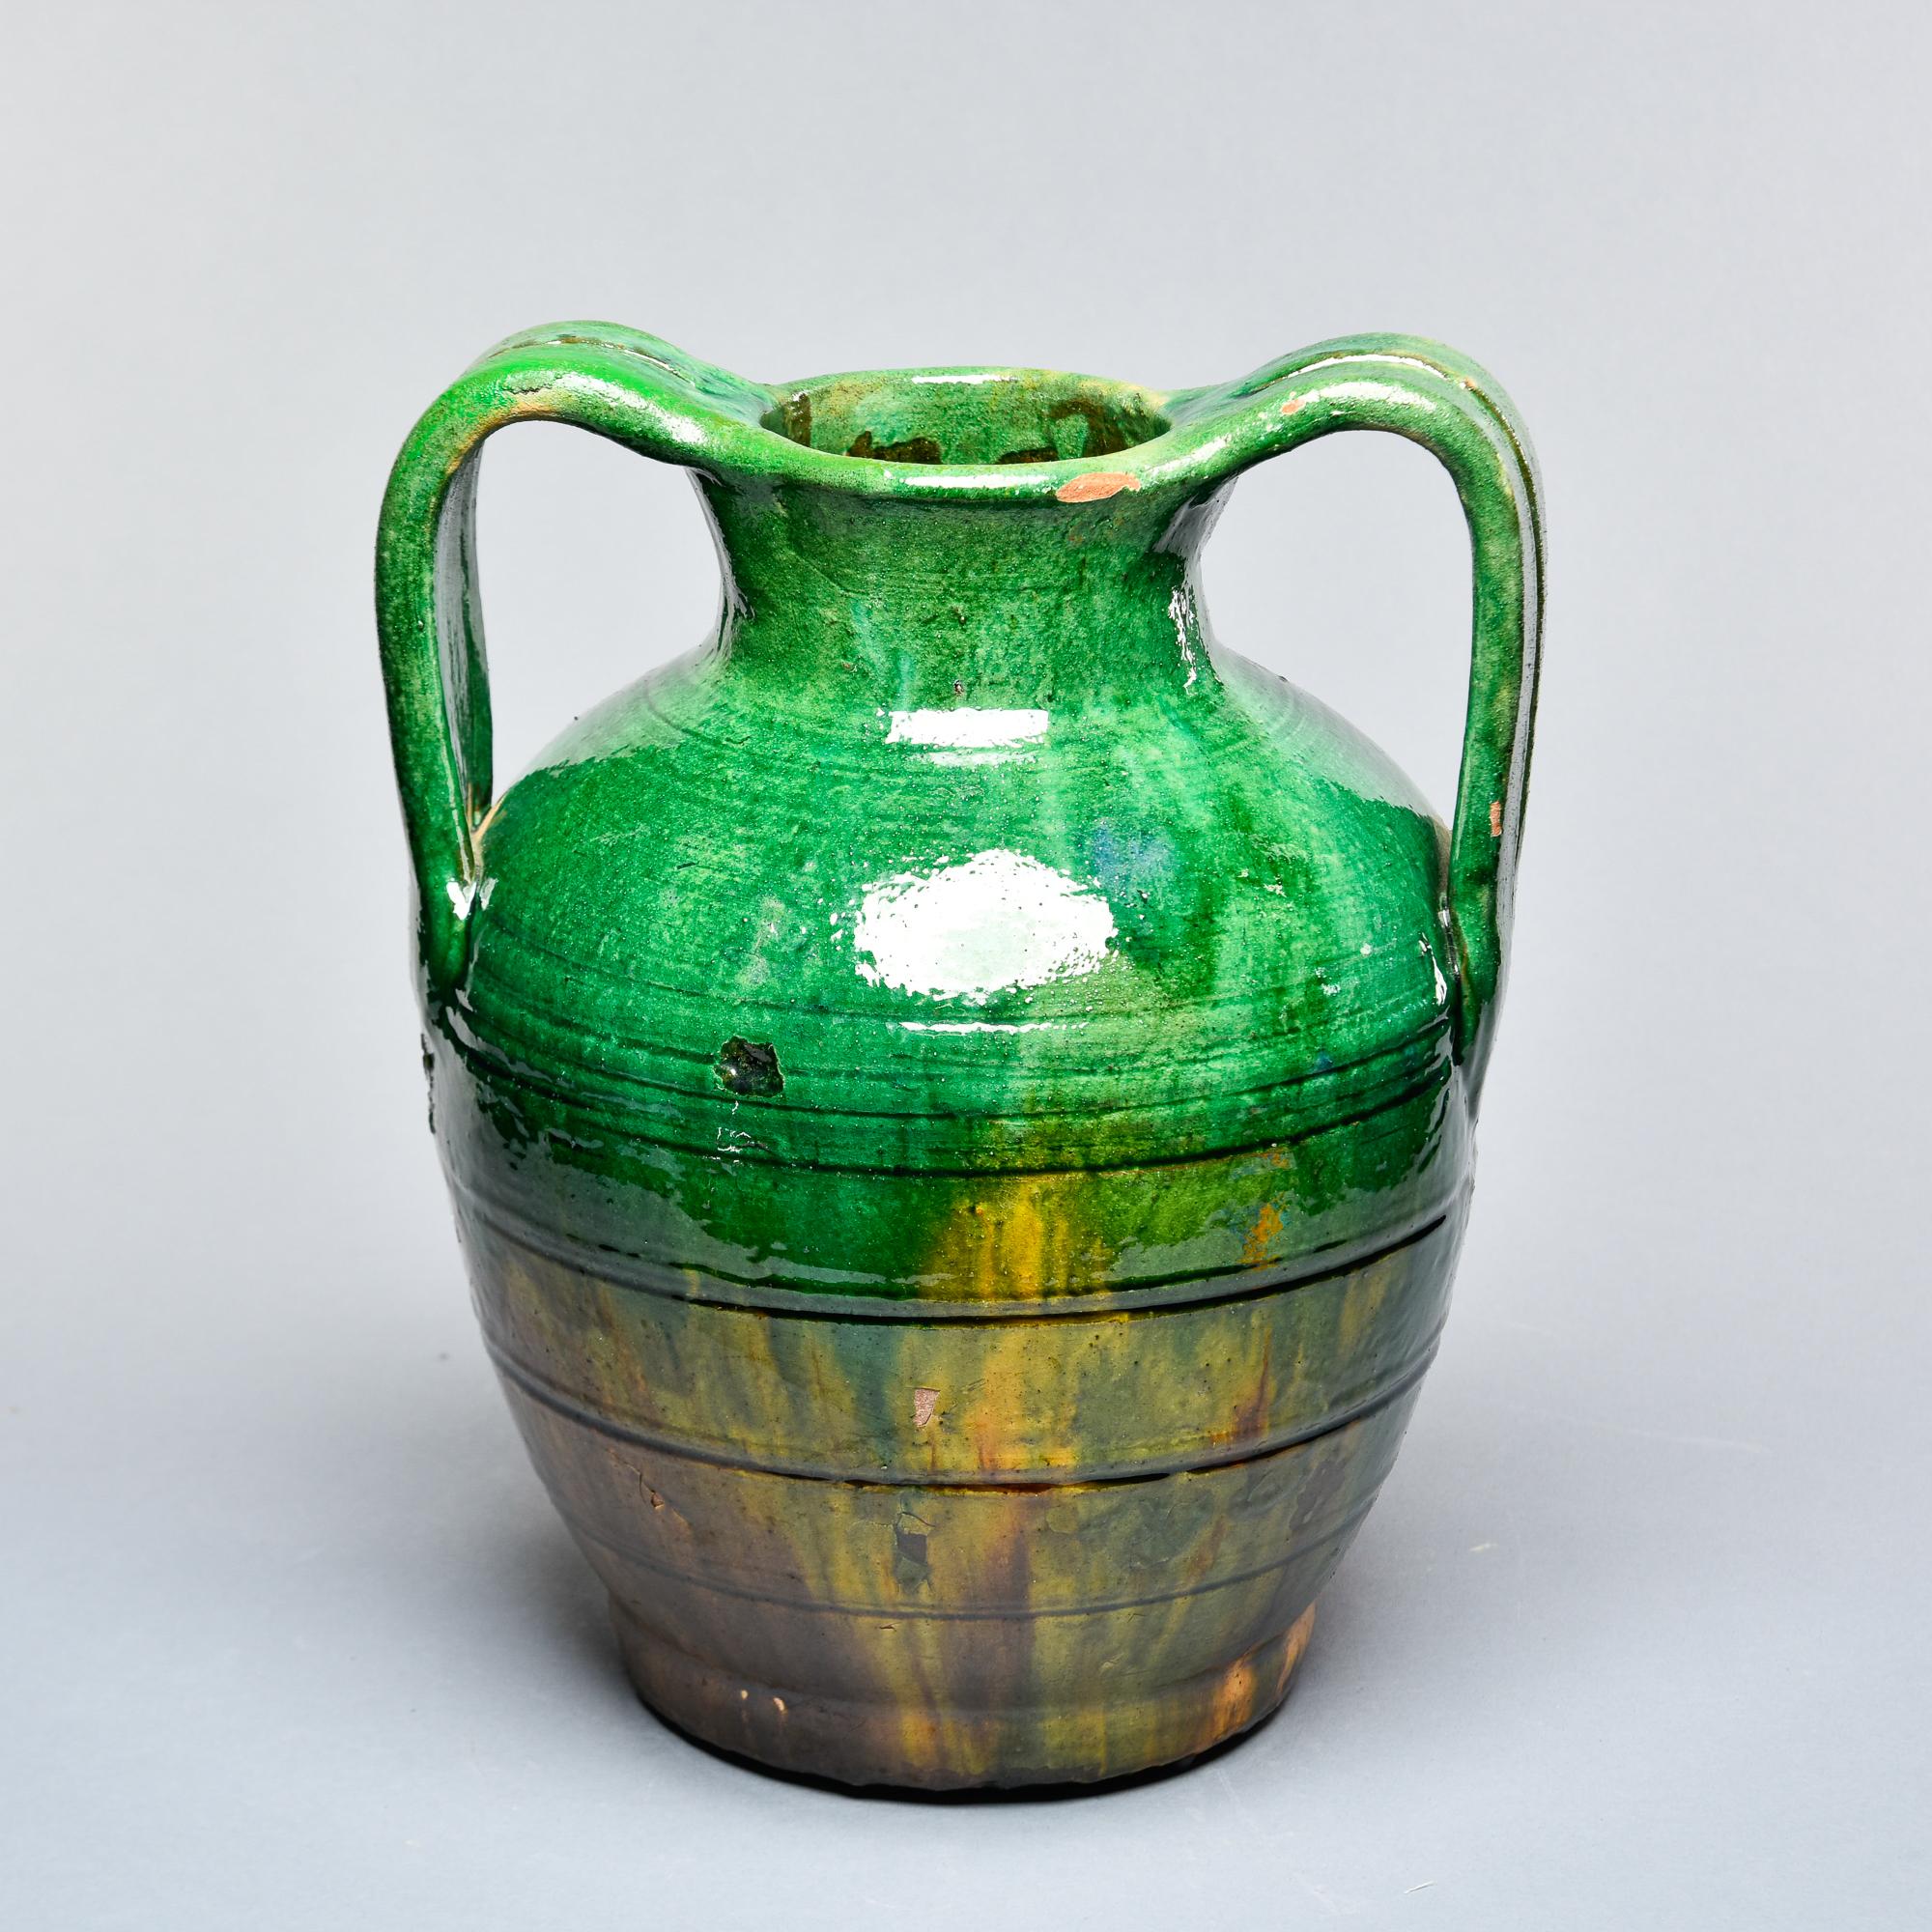 Trouvé en France, ce pot rustique traditionnel français vers 1910 a deux anses courbes et une glaçure vert jade avec une sous glaçure or moutarde. Quelques usures éparses avec des écailles sur la glaçure, mais pas de réparations ni de problèmes